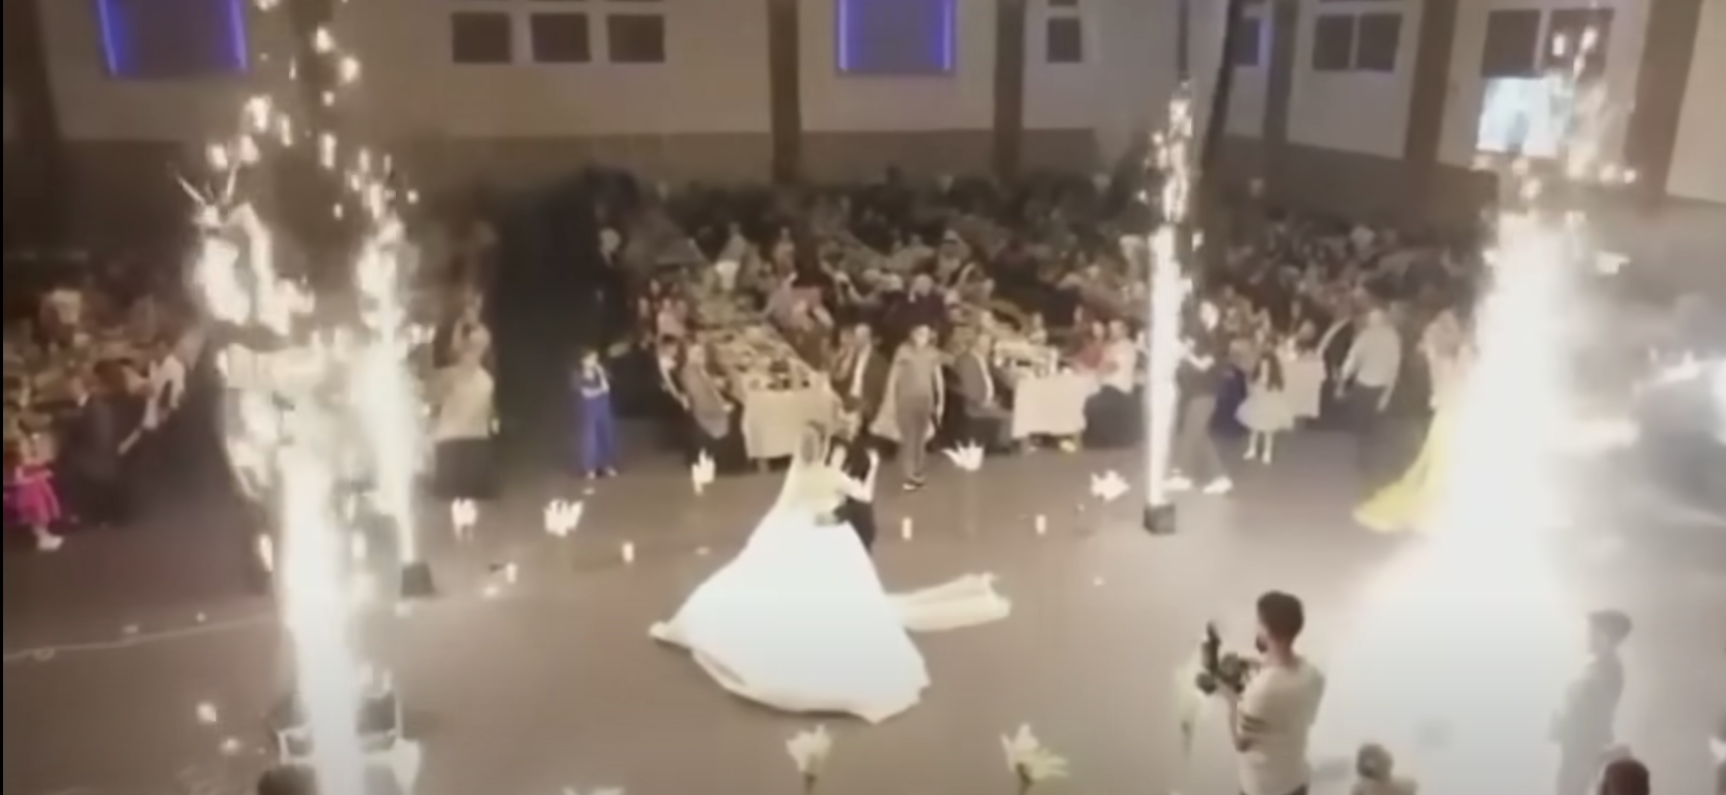 Als Haneen und Revan Isho auf ihrer Hochzeit tanzten, wurden Fackeln gezündet | Quelle: youtube.com/@SkyNews